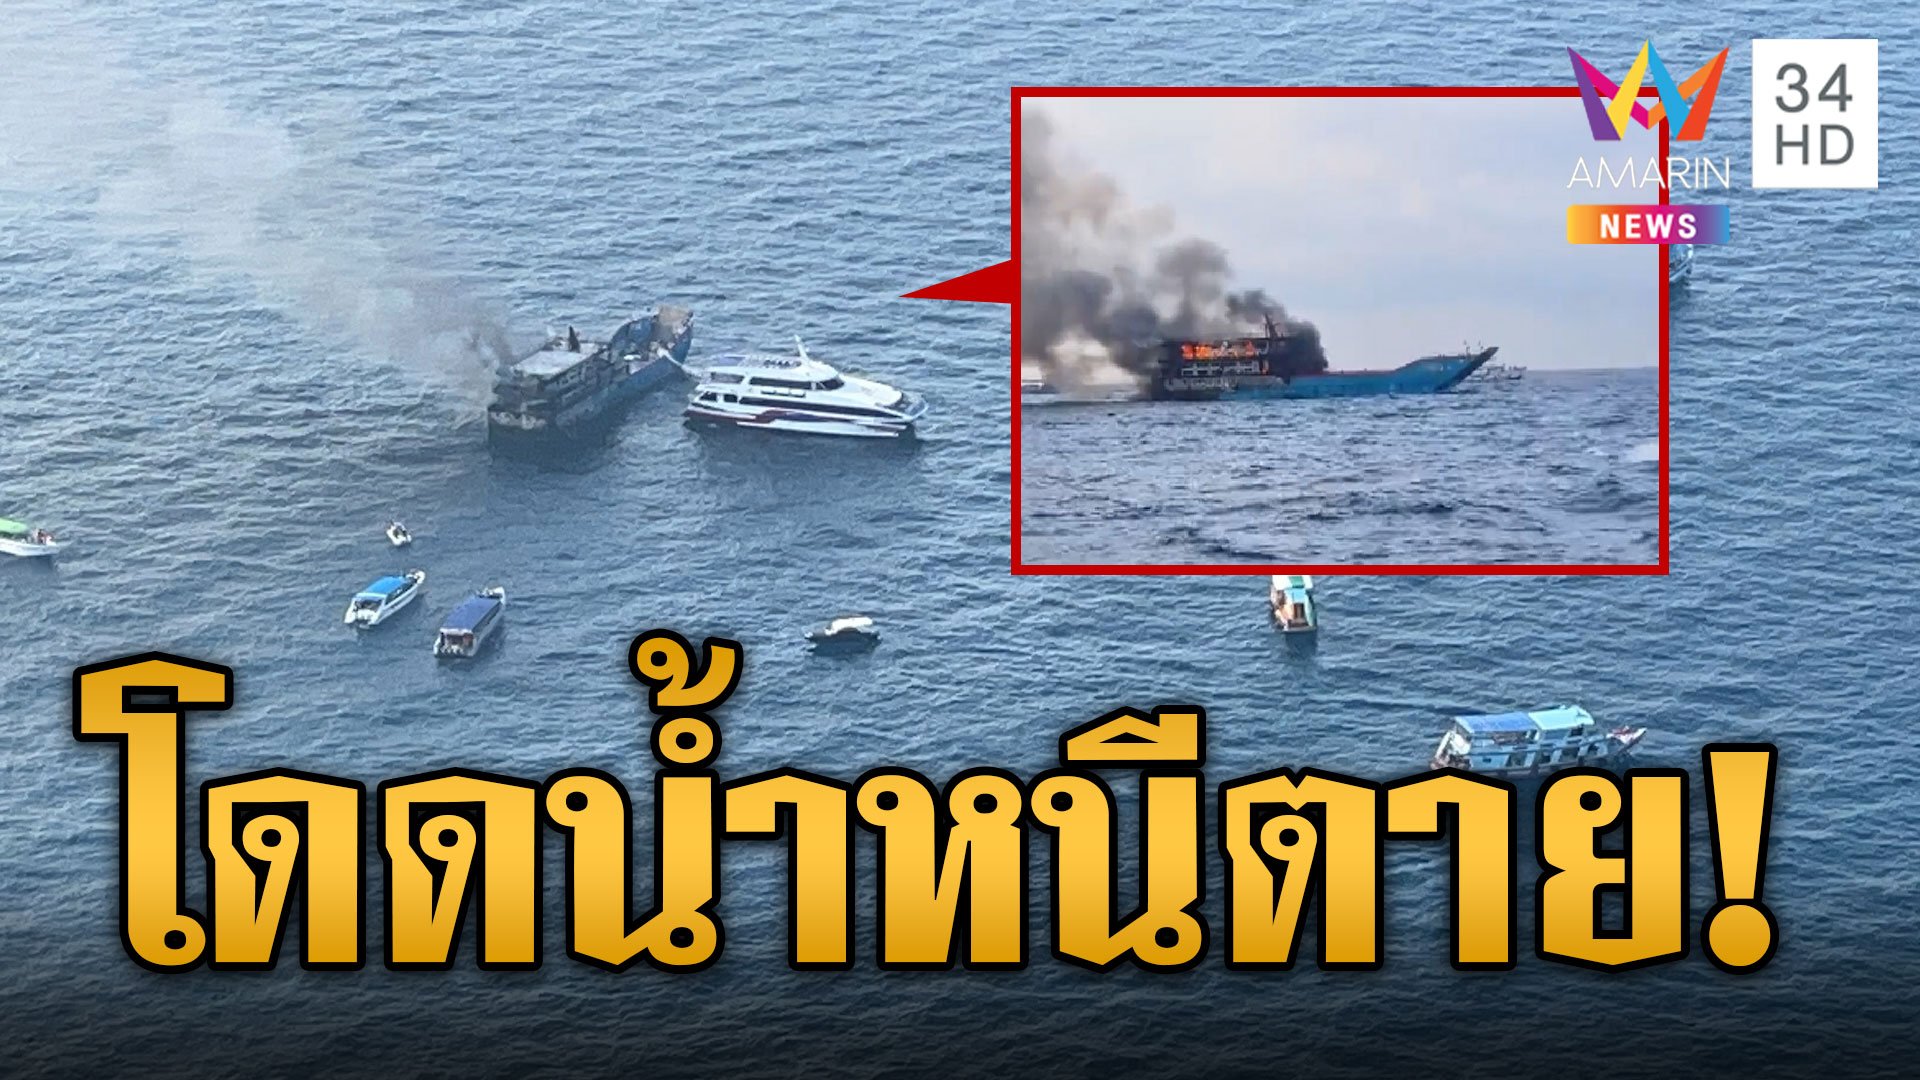 ระทึก! ไฟไหม้เรือเกาะเต่า ผู้โดยสารหนีตายโดดลอยคอกลางทะเล | ข่าวเที่ยงอมรินทร์ | 4 เม.ย. 67 | AMARIN TVHD34